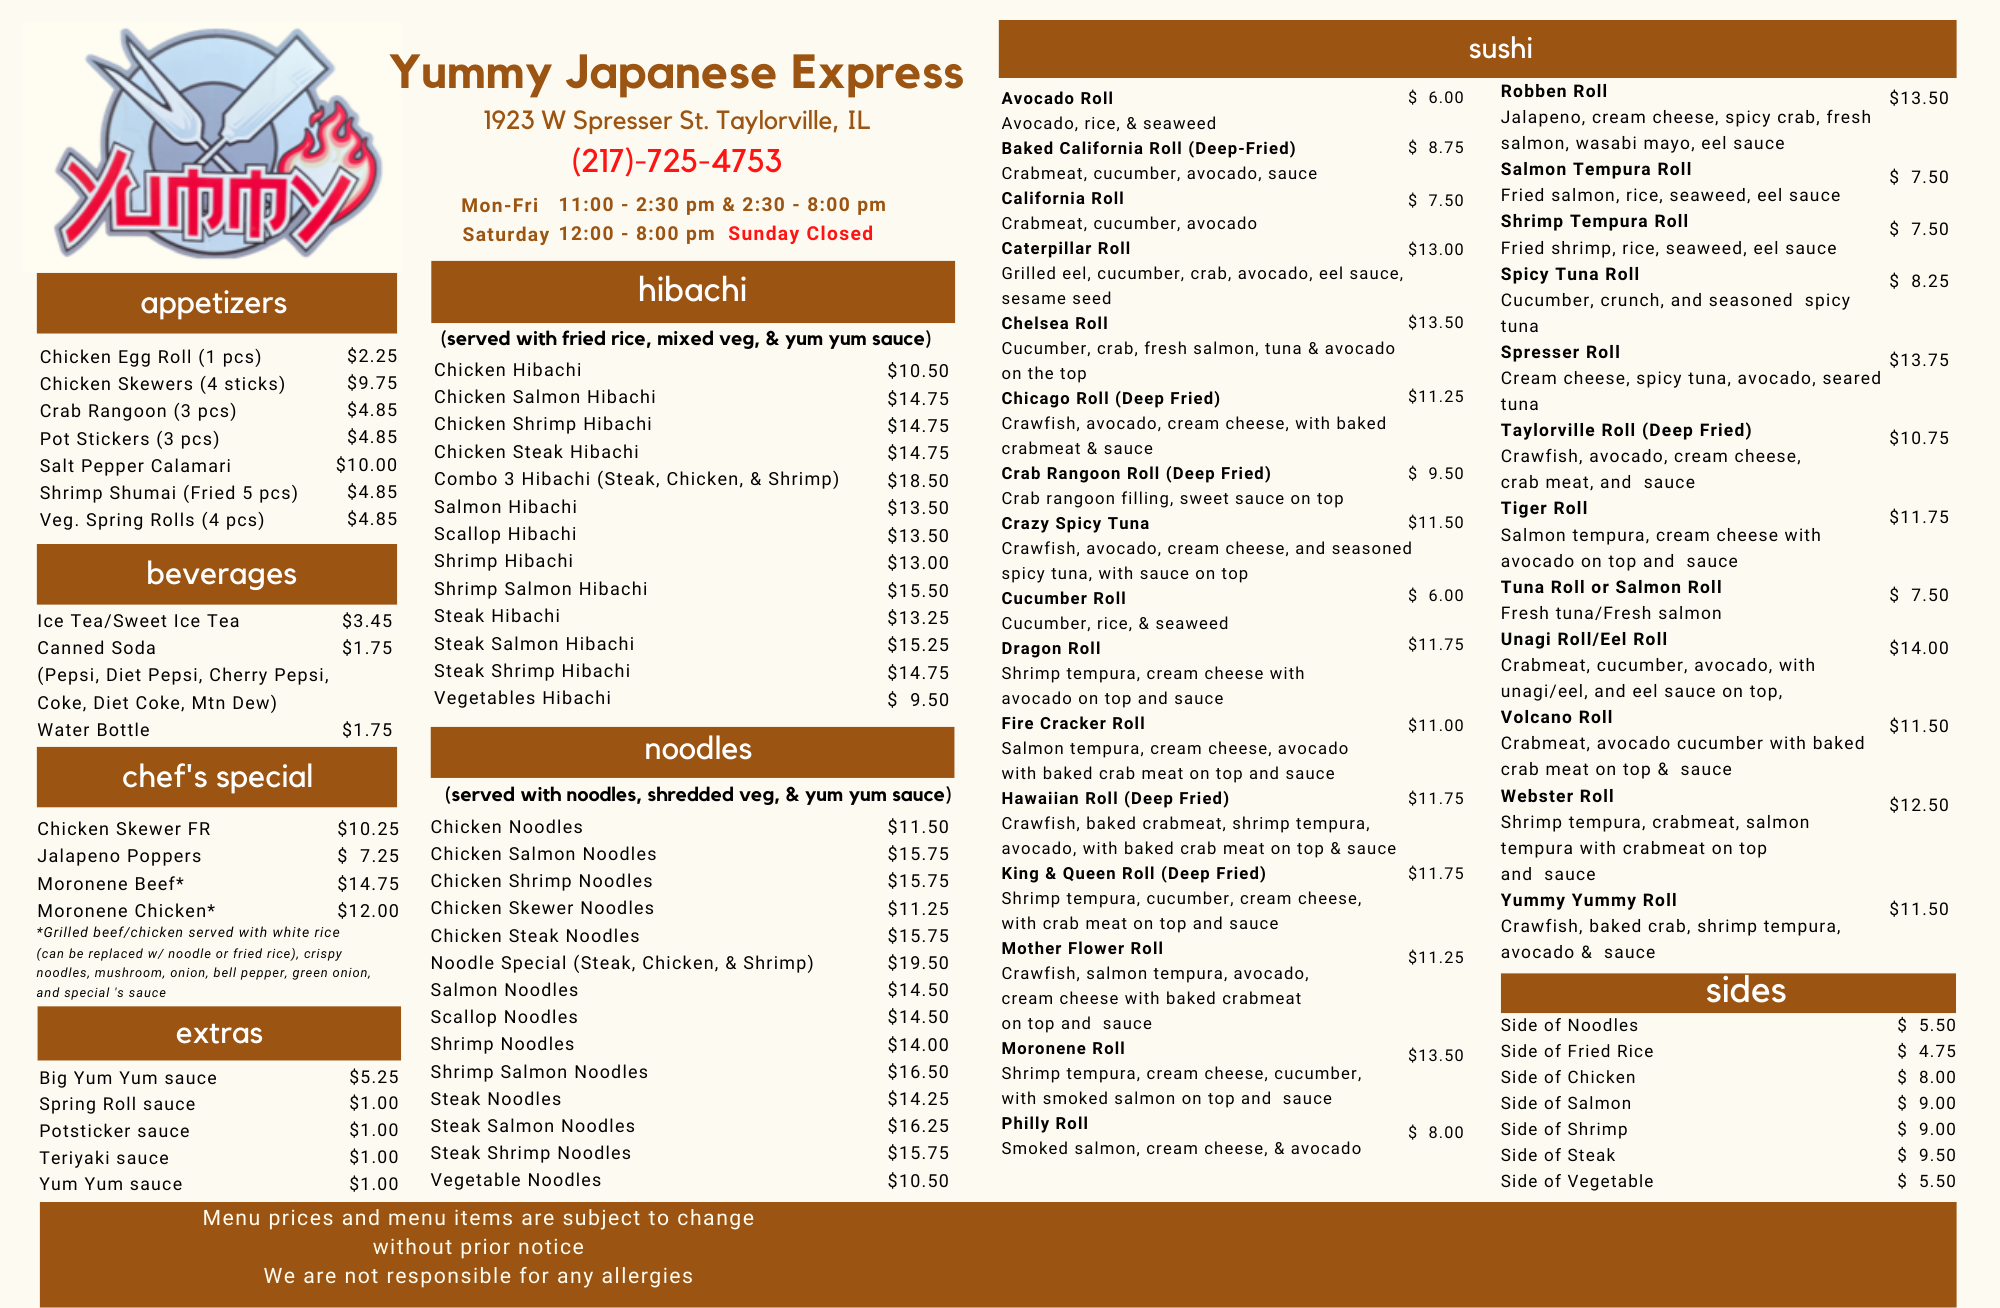 Yummy Japanese Express - TAYLORVILLE 1923 W Spresser St, Taylorville, IL 62568